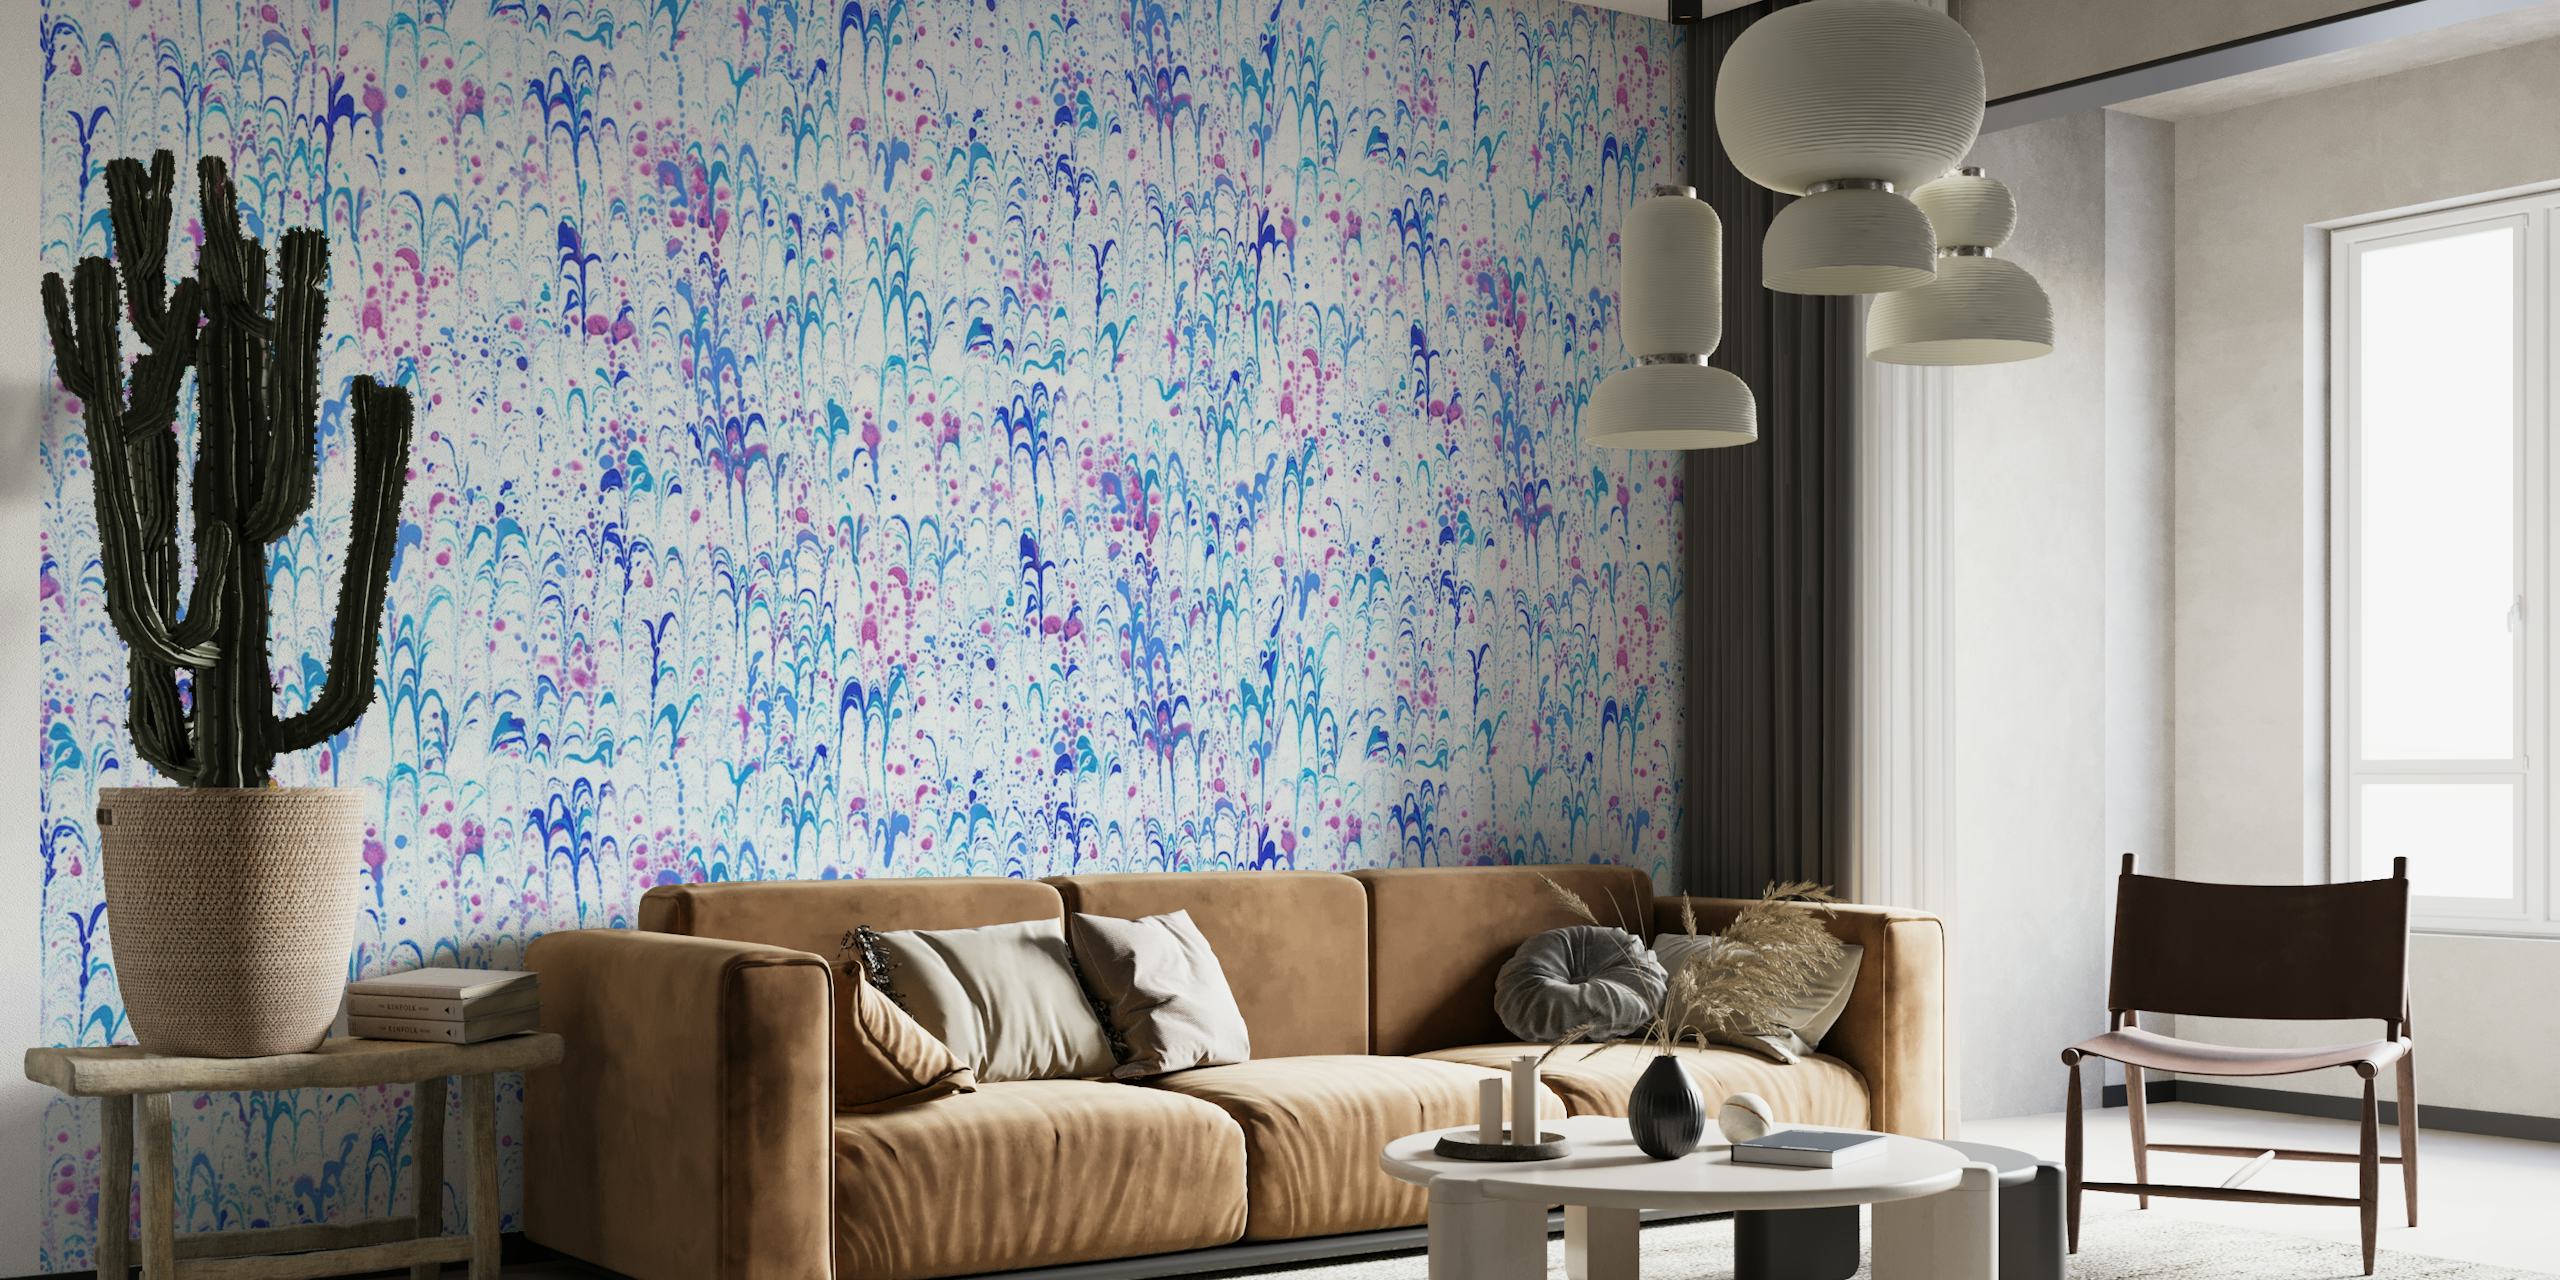 Weiches, pastellfarbenes, marmoriertes Papierkunst-Wandbild